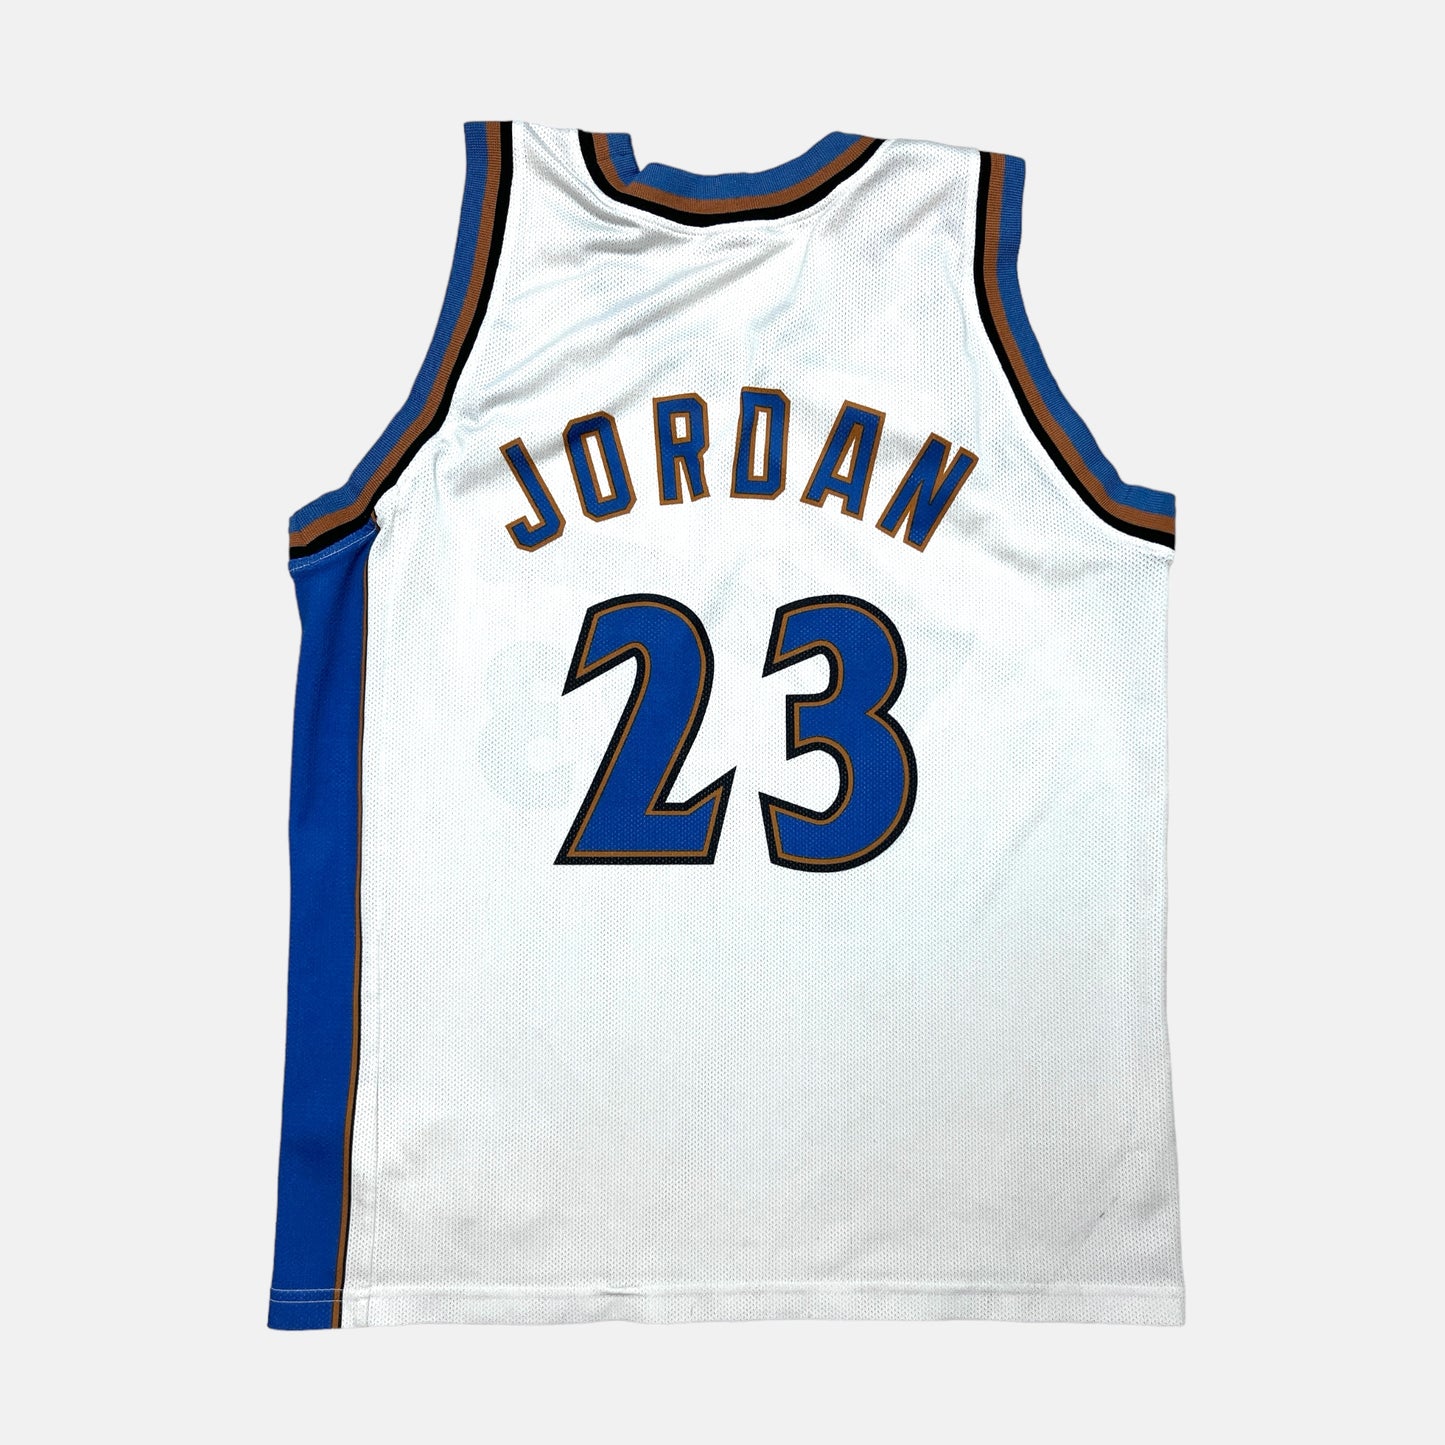 Washington Wizards - Michael Jordan - Größe L - Champion - NBA Trikot